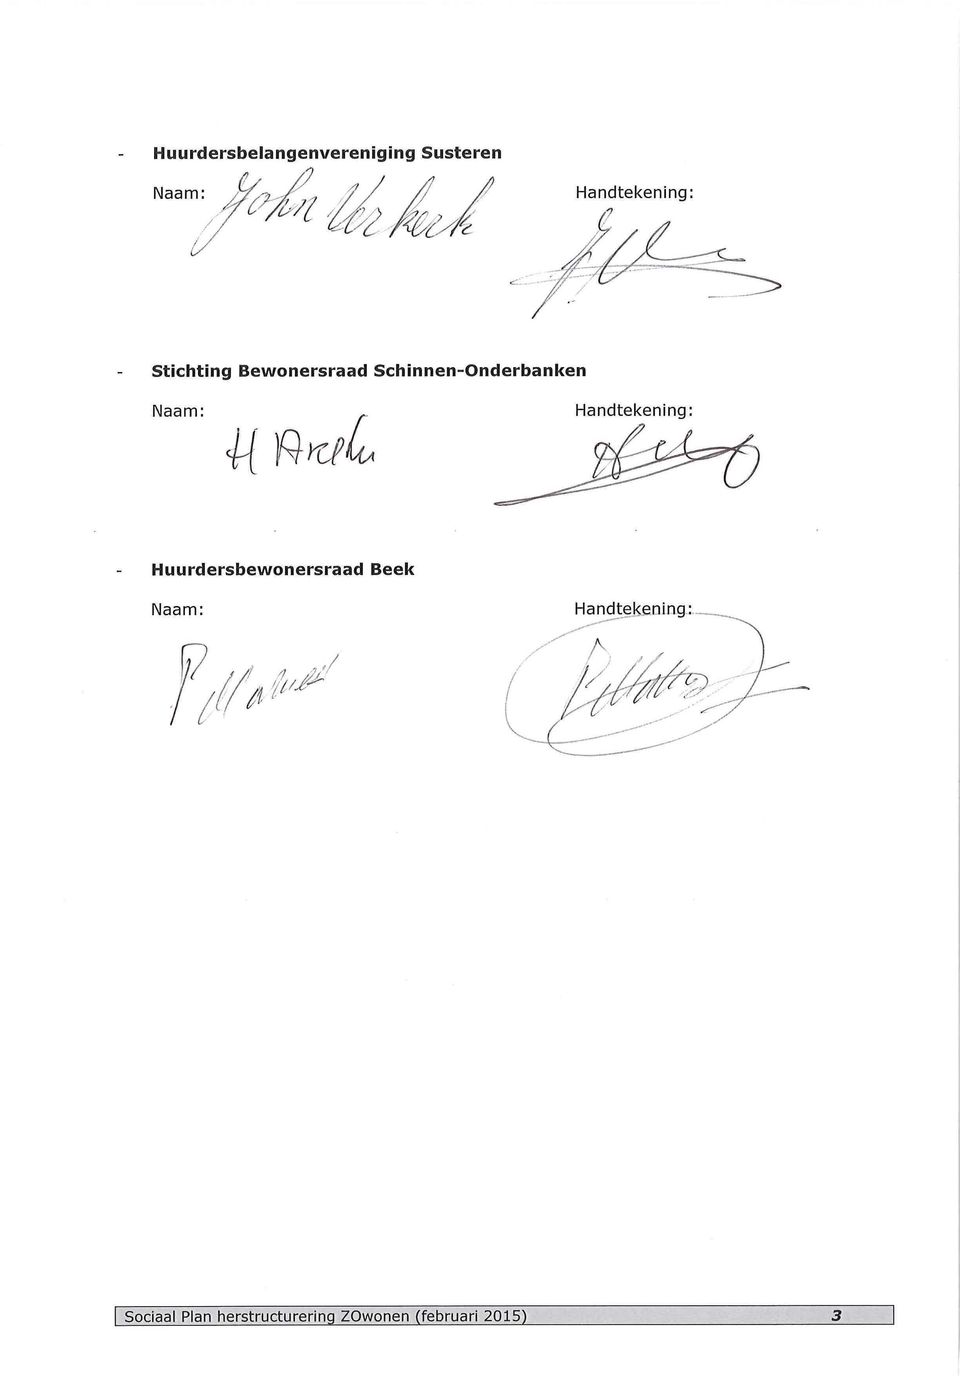 Schinnen-Onderbanken Naam:, Handtekening: